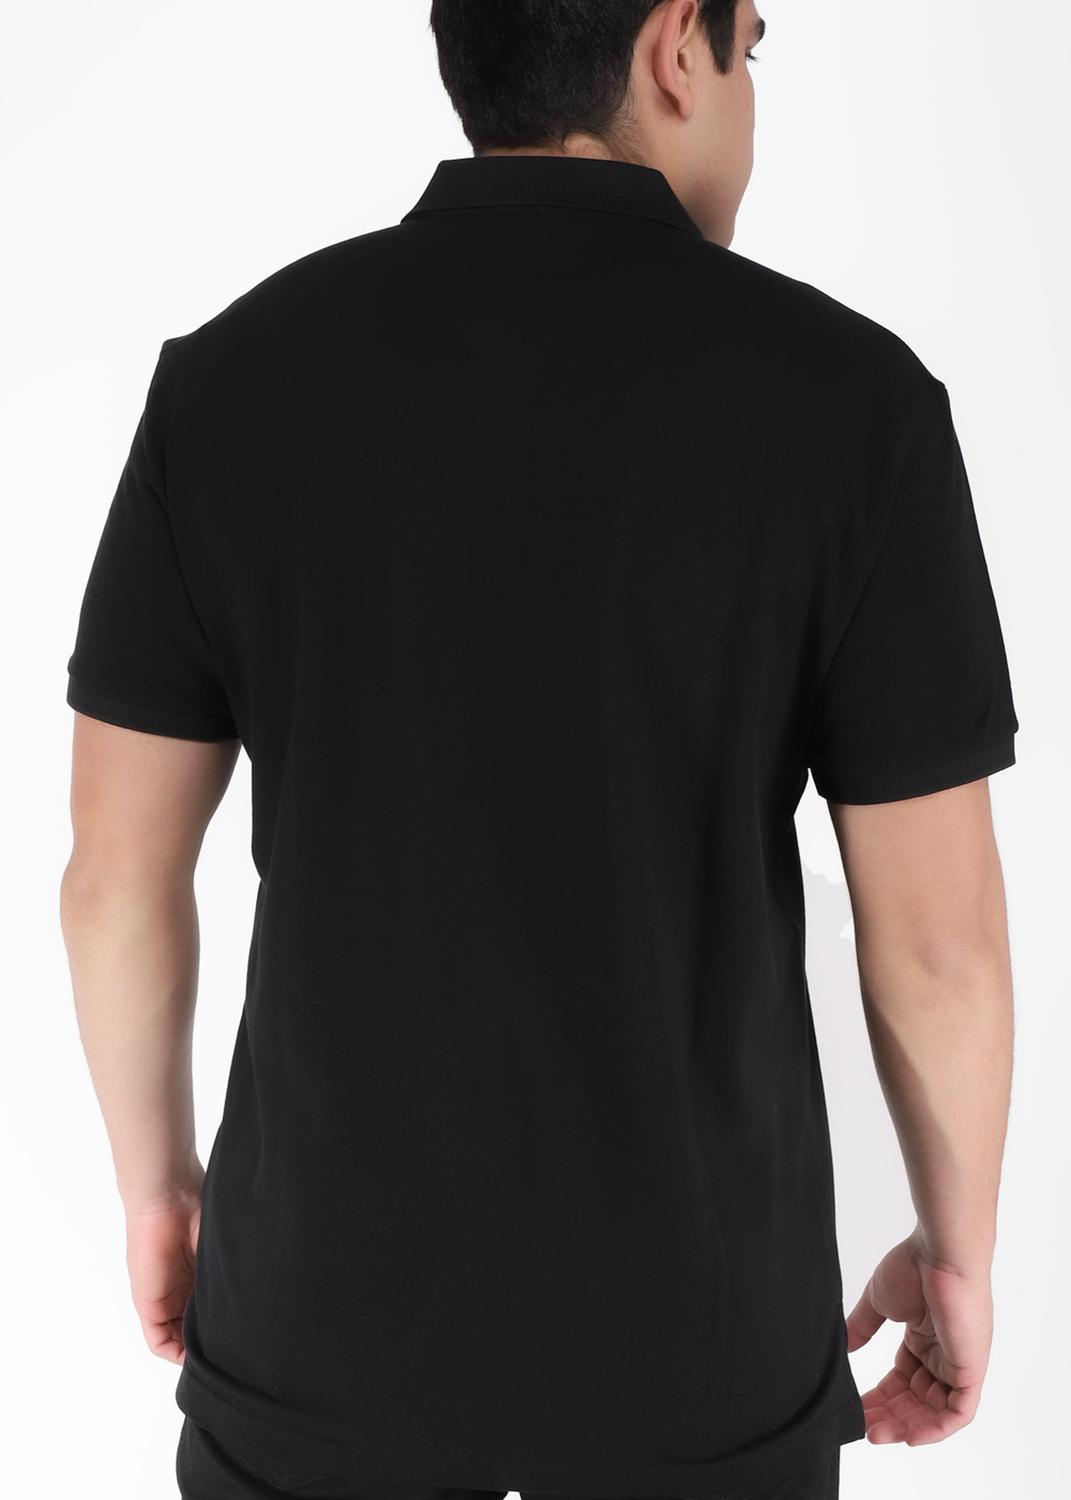 Moschino t-shirt tipo polo para hombre MSC-A1603